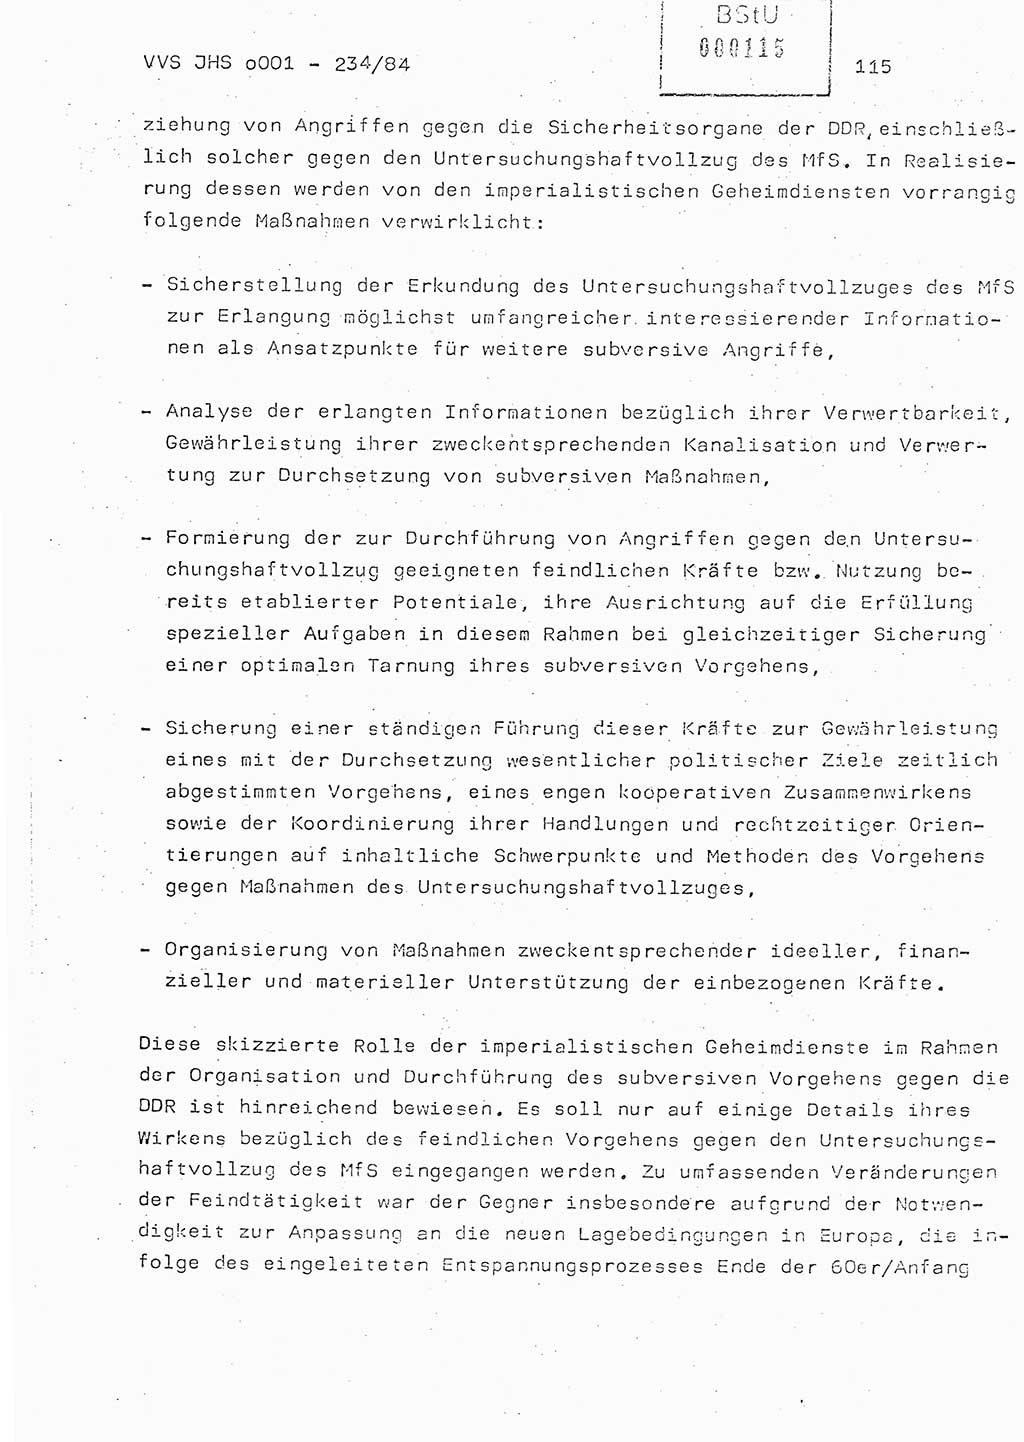 Dissertation Oberst Siegfried Rataizick (Abt. ⅩⅣ), Oberstleutnant Volkmar Heinz (Abt. ⅩⅣ), Oberstleutnant Werner Stein (HA Ⅸ), Hauptmann Heinz Conrad (JHS), Ministerium für Staatssicherheit (MfS) [Deutsche Demokratische Republik (DDR)], Juristische Hochschule (JHS), Vertrauliche Verschlußsache (VVS) o001-234/84, Potsdam 1984, Seite 115 (Diss. MfS DDR JHS VVS o001-234/84 1984, S. 115)